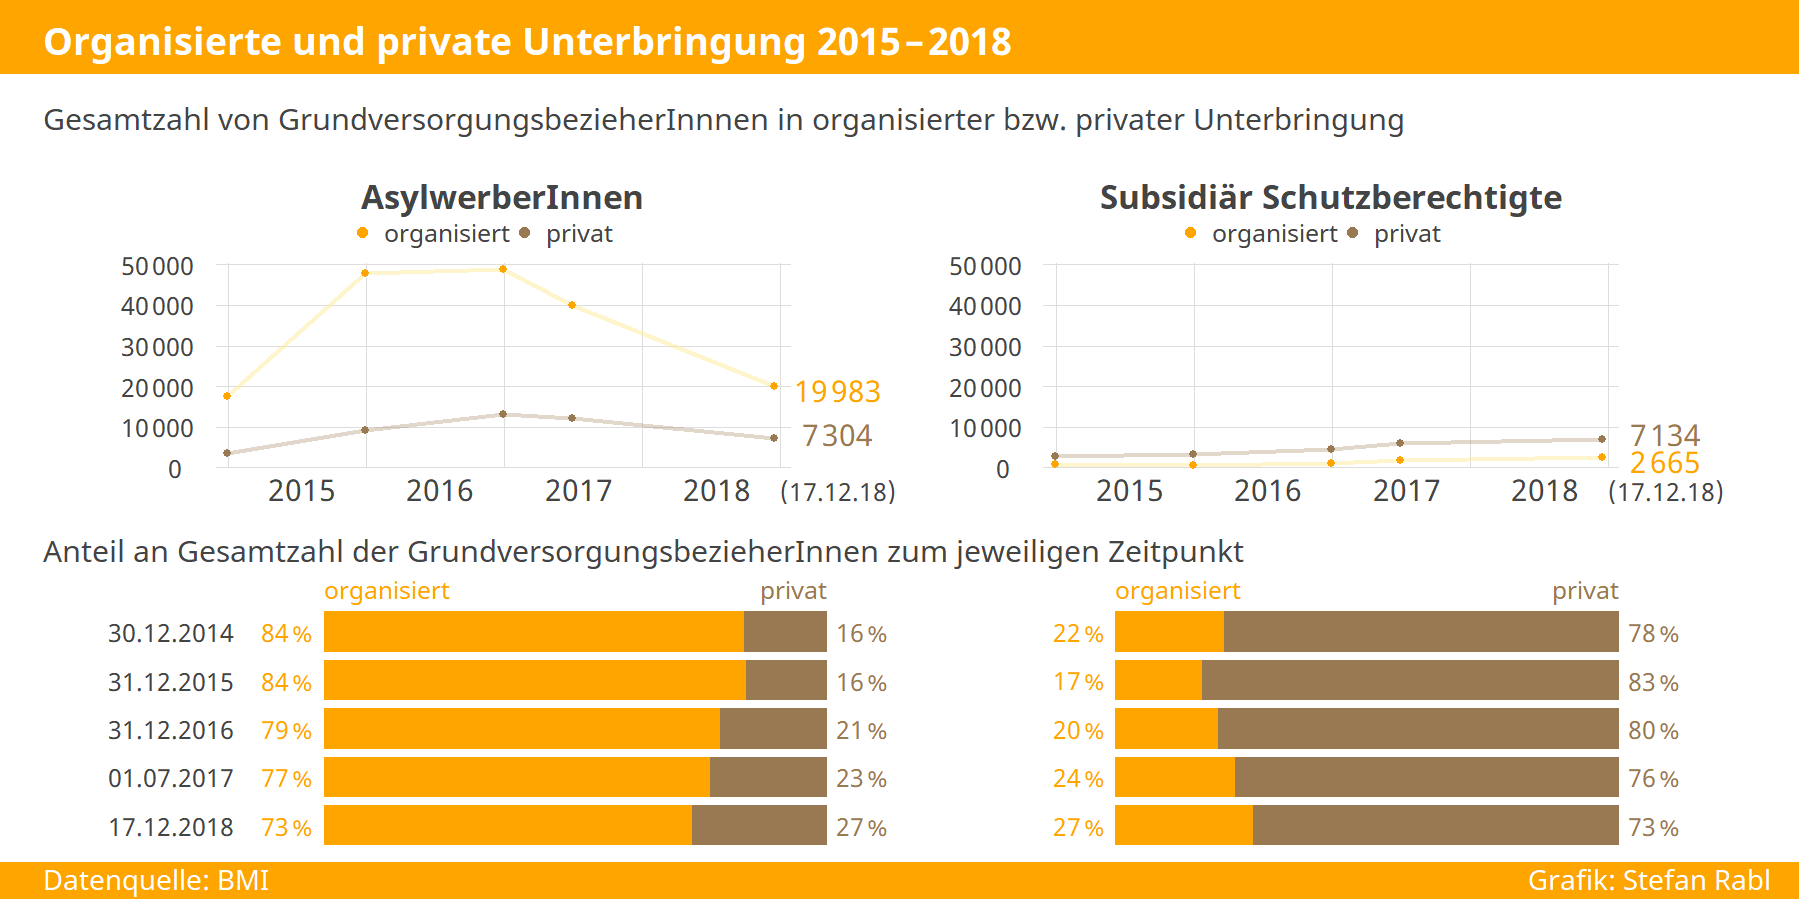 Grafik: Organisierte und private Unterbringung 2015-2018